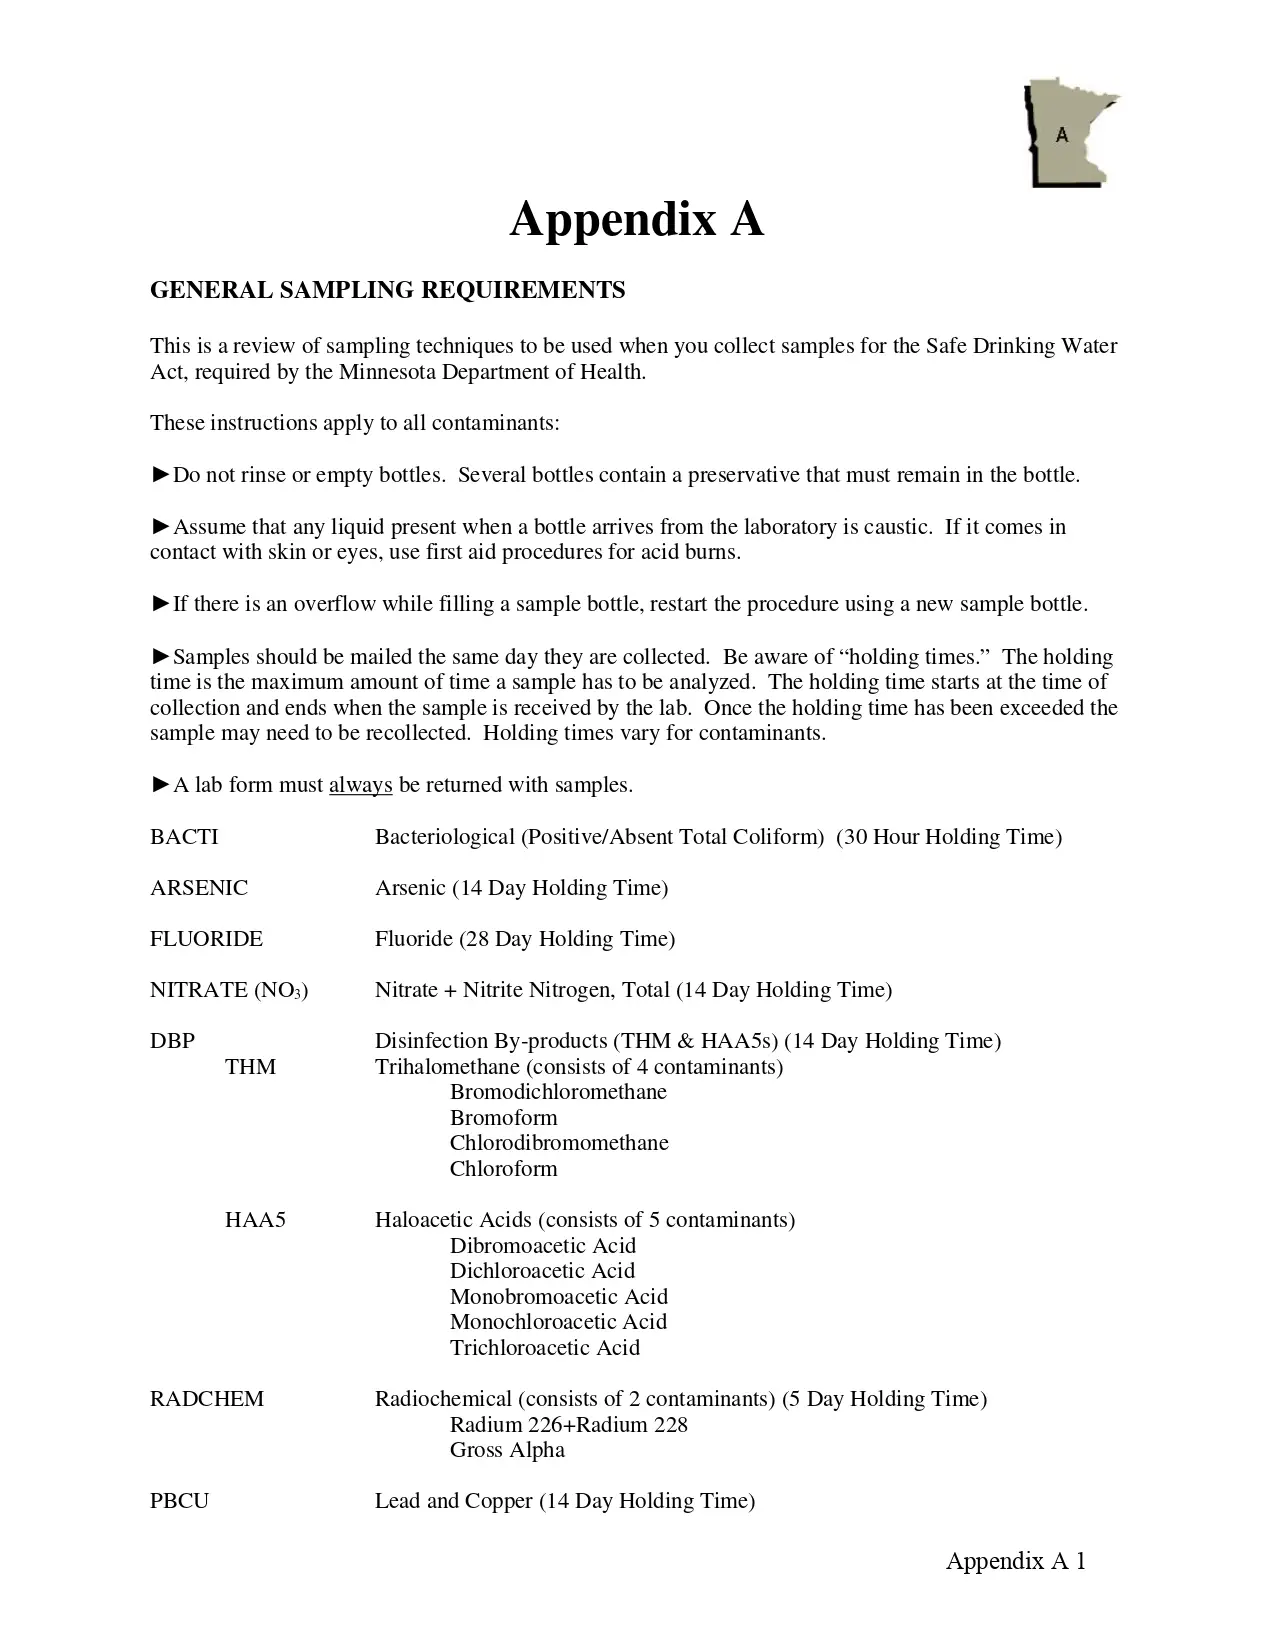 Appendix A General Sampling Requirements